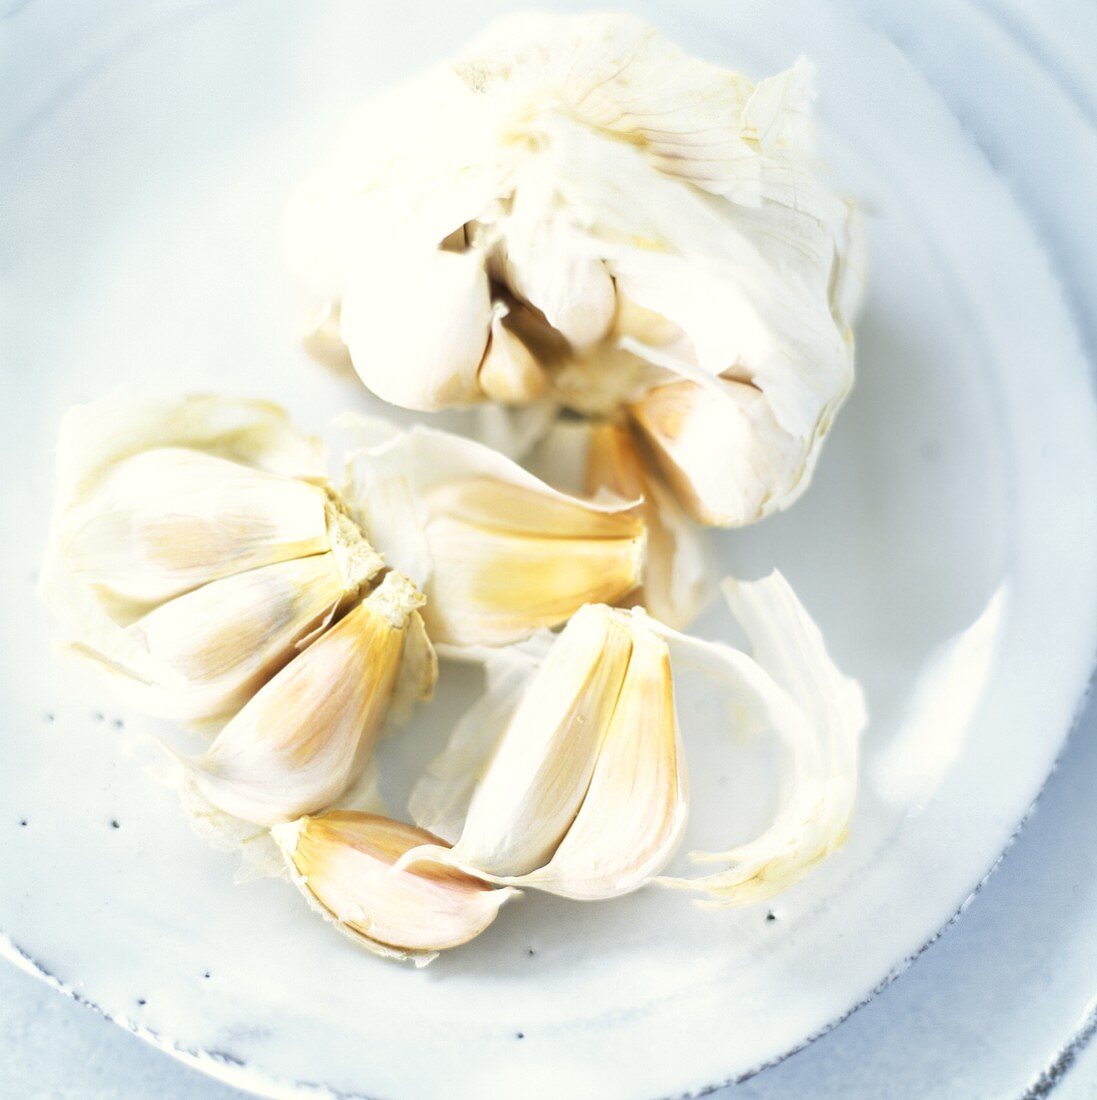 Cloves of garlic in white ceramic bowl